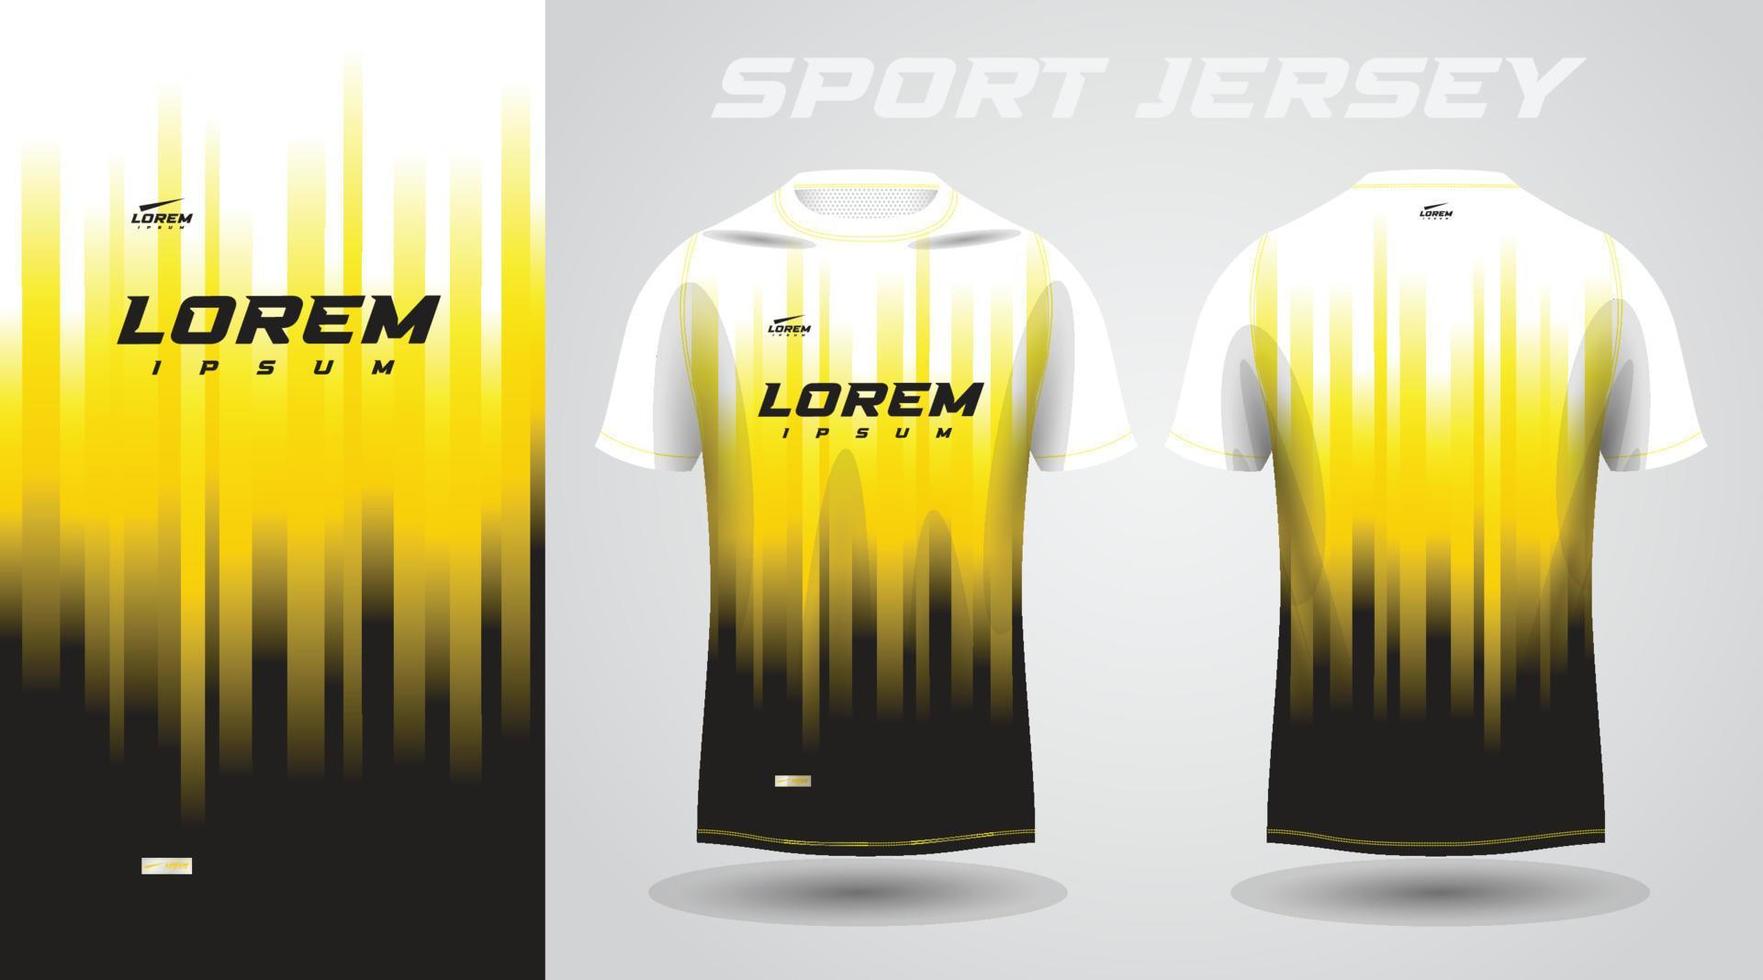 geel zwart overhemd voetbal Amerikaans voetbal sport Jersey sjabloon ontwerp mockup vector